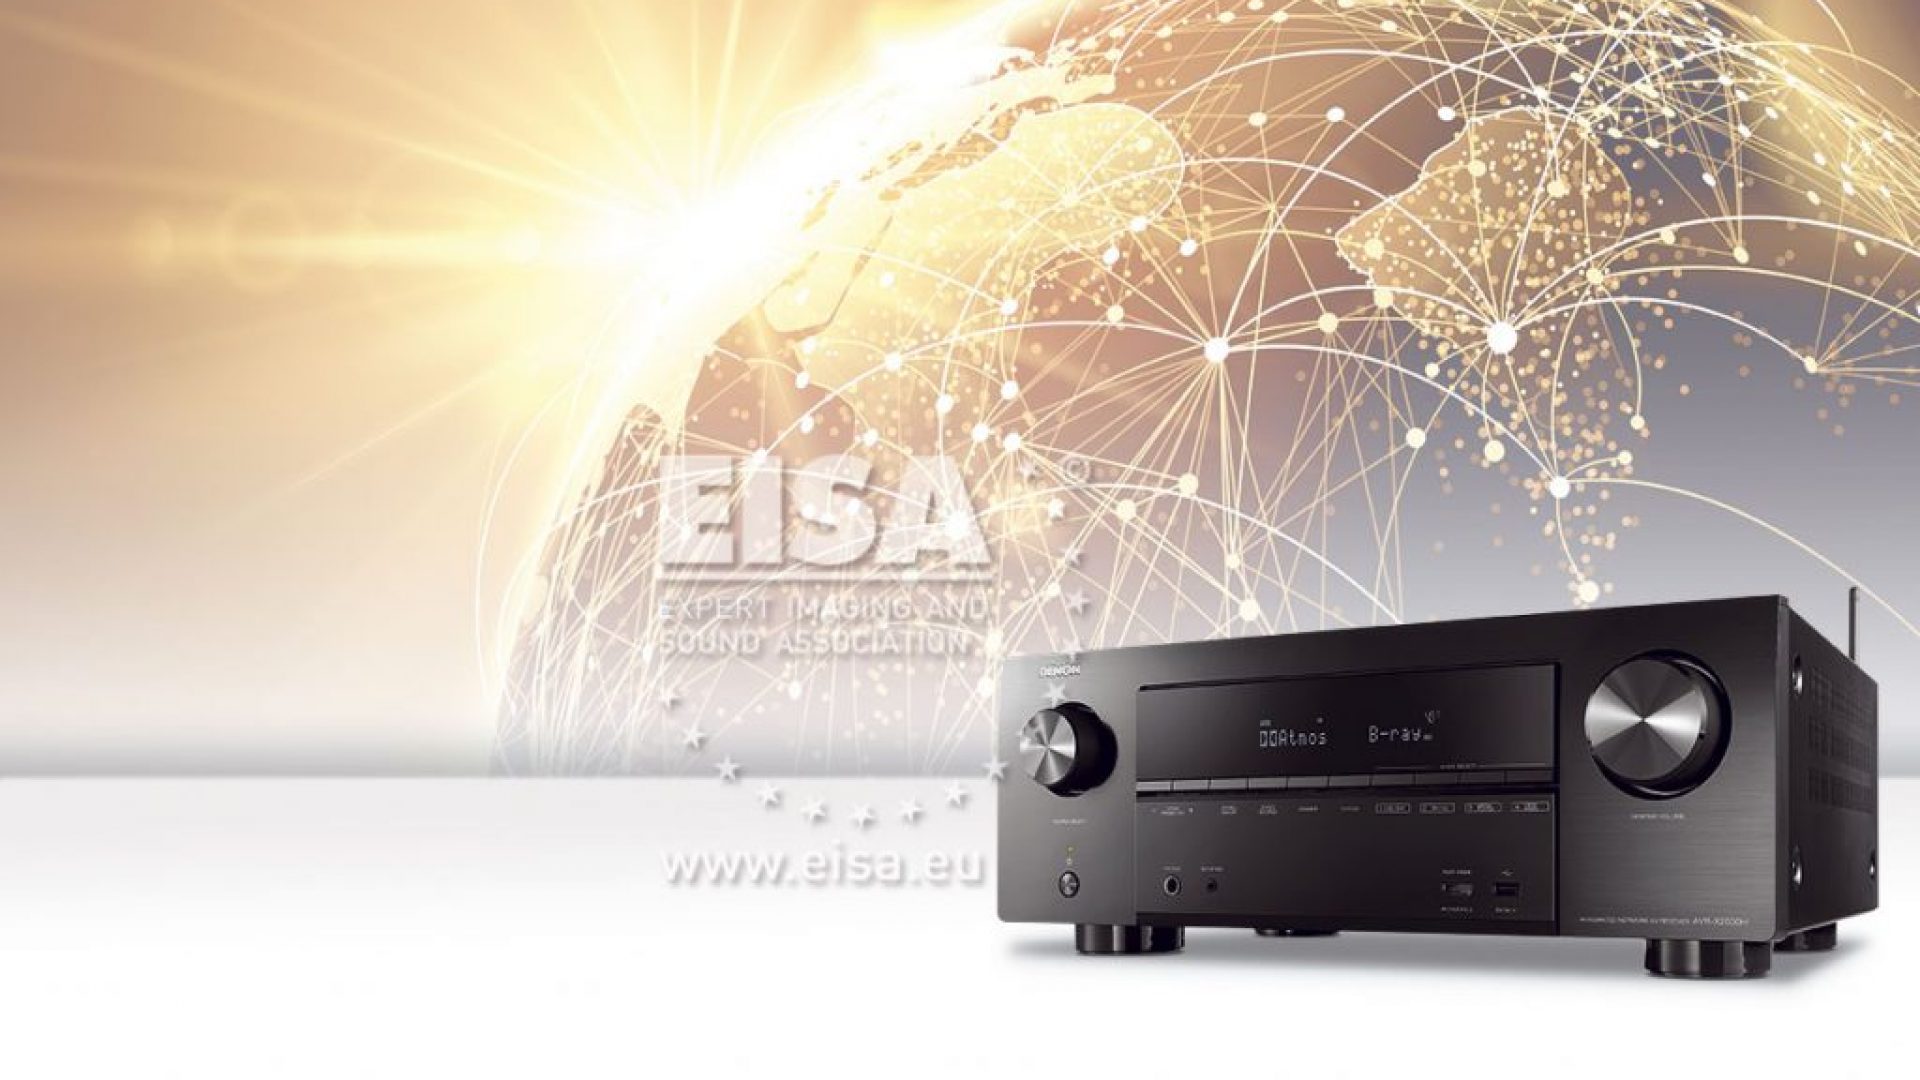 Denon AVR-X2600H – EISA La mejor compra en categoría AV Amplificador – 2019-2020